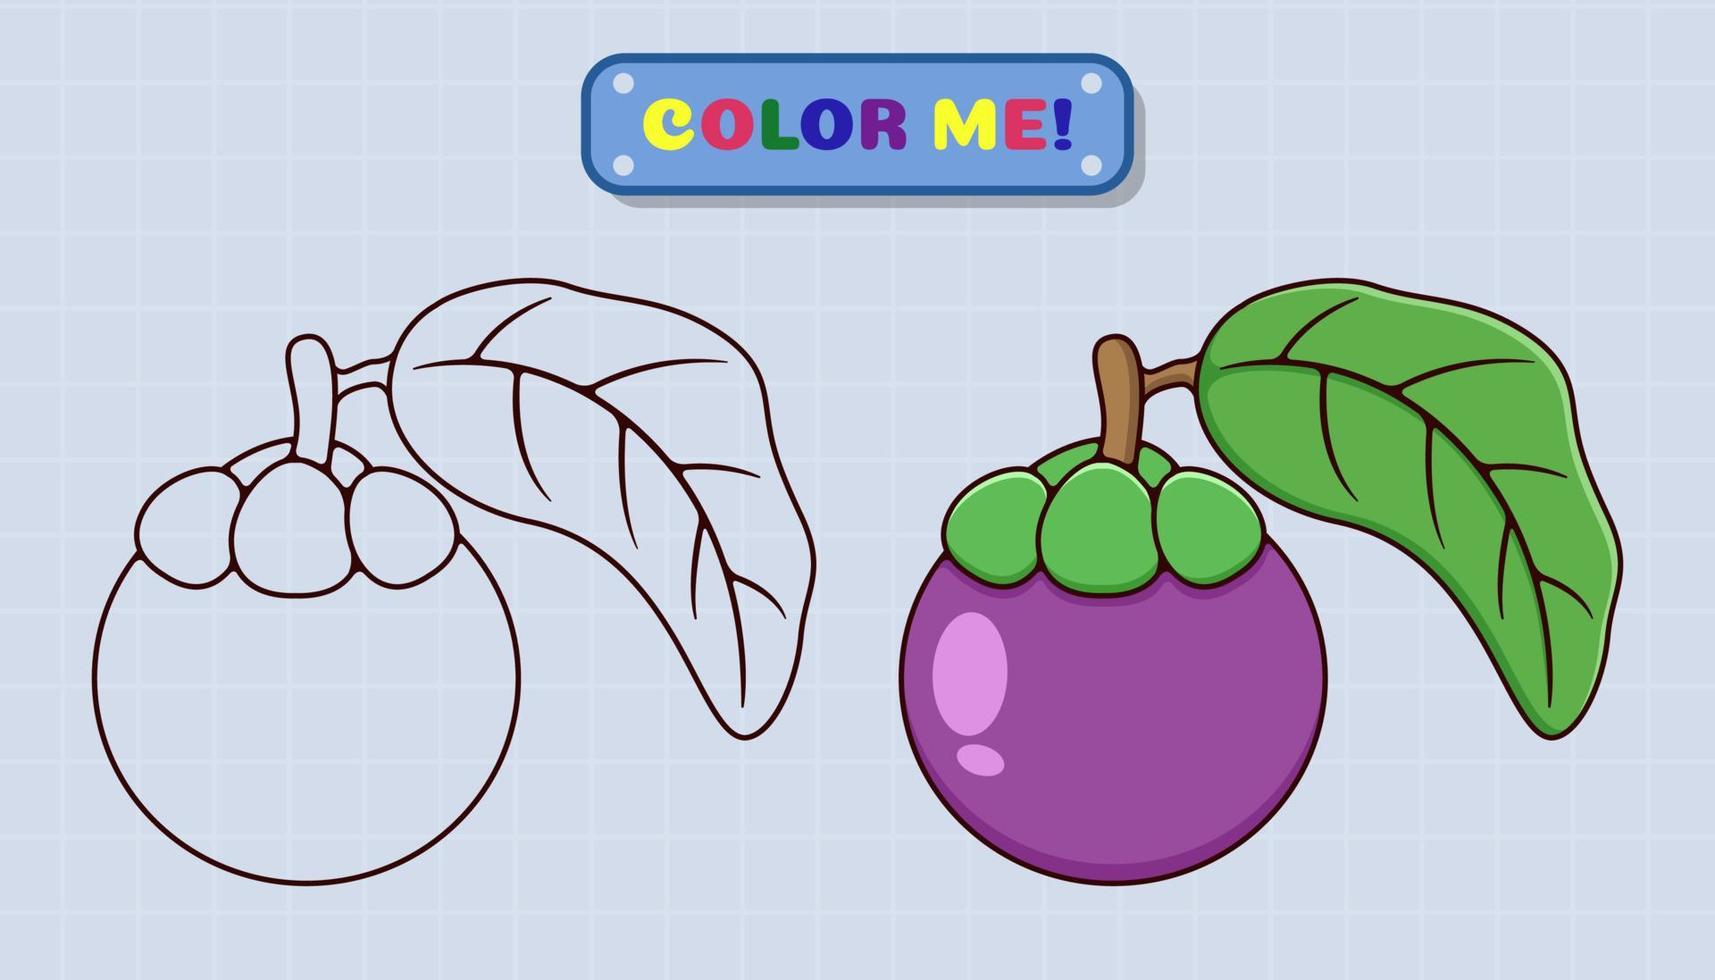 La página del libro para colorear mangostán viene con bocetos y muestras de color para niños y educación preescolar. ilustración de estilo de dibujos animados vector